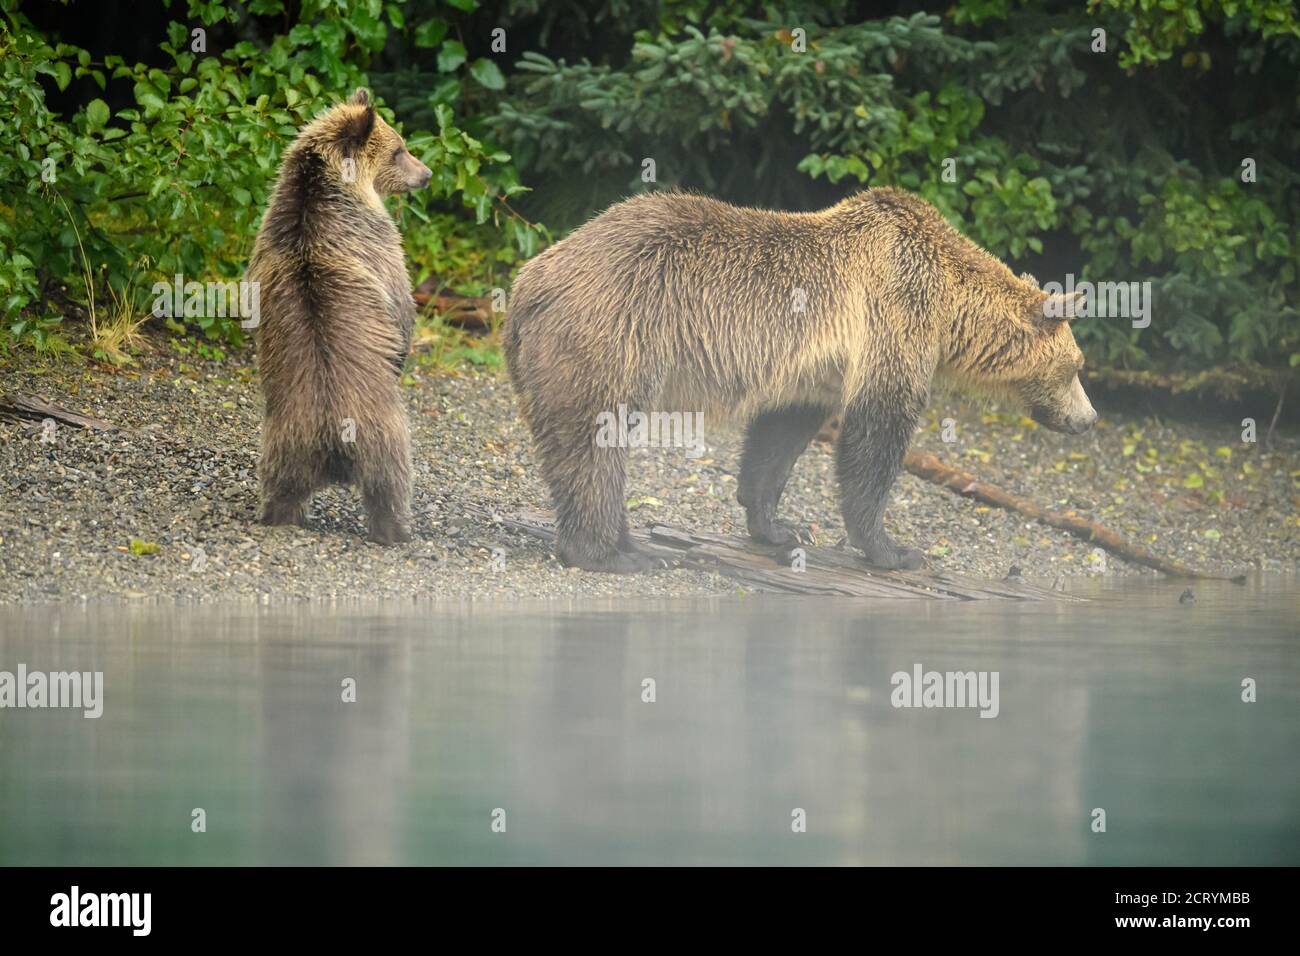 Ours grizzli (Ursus arctos) SOW et cub alertent une famille rivale le long d'une rivière à saumon, Chilcotin Wilderness, BC Interior, Canada Banque D'Images